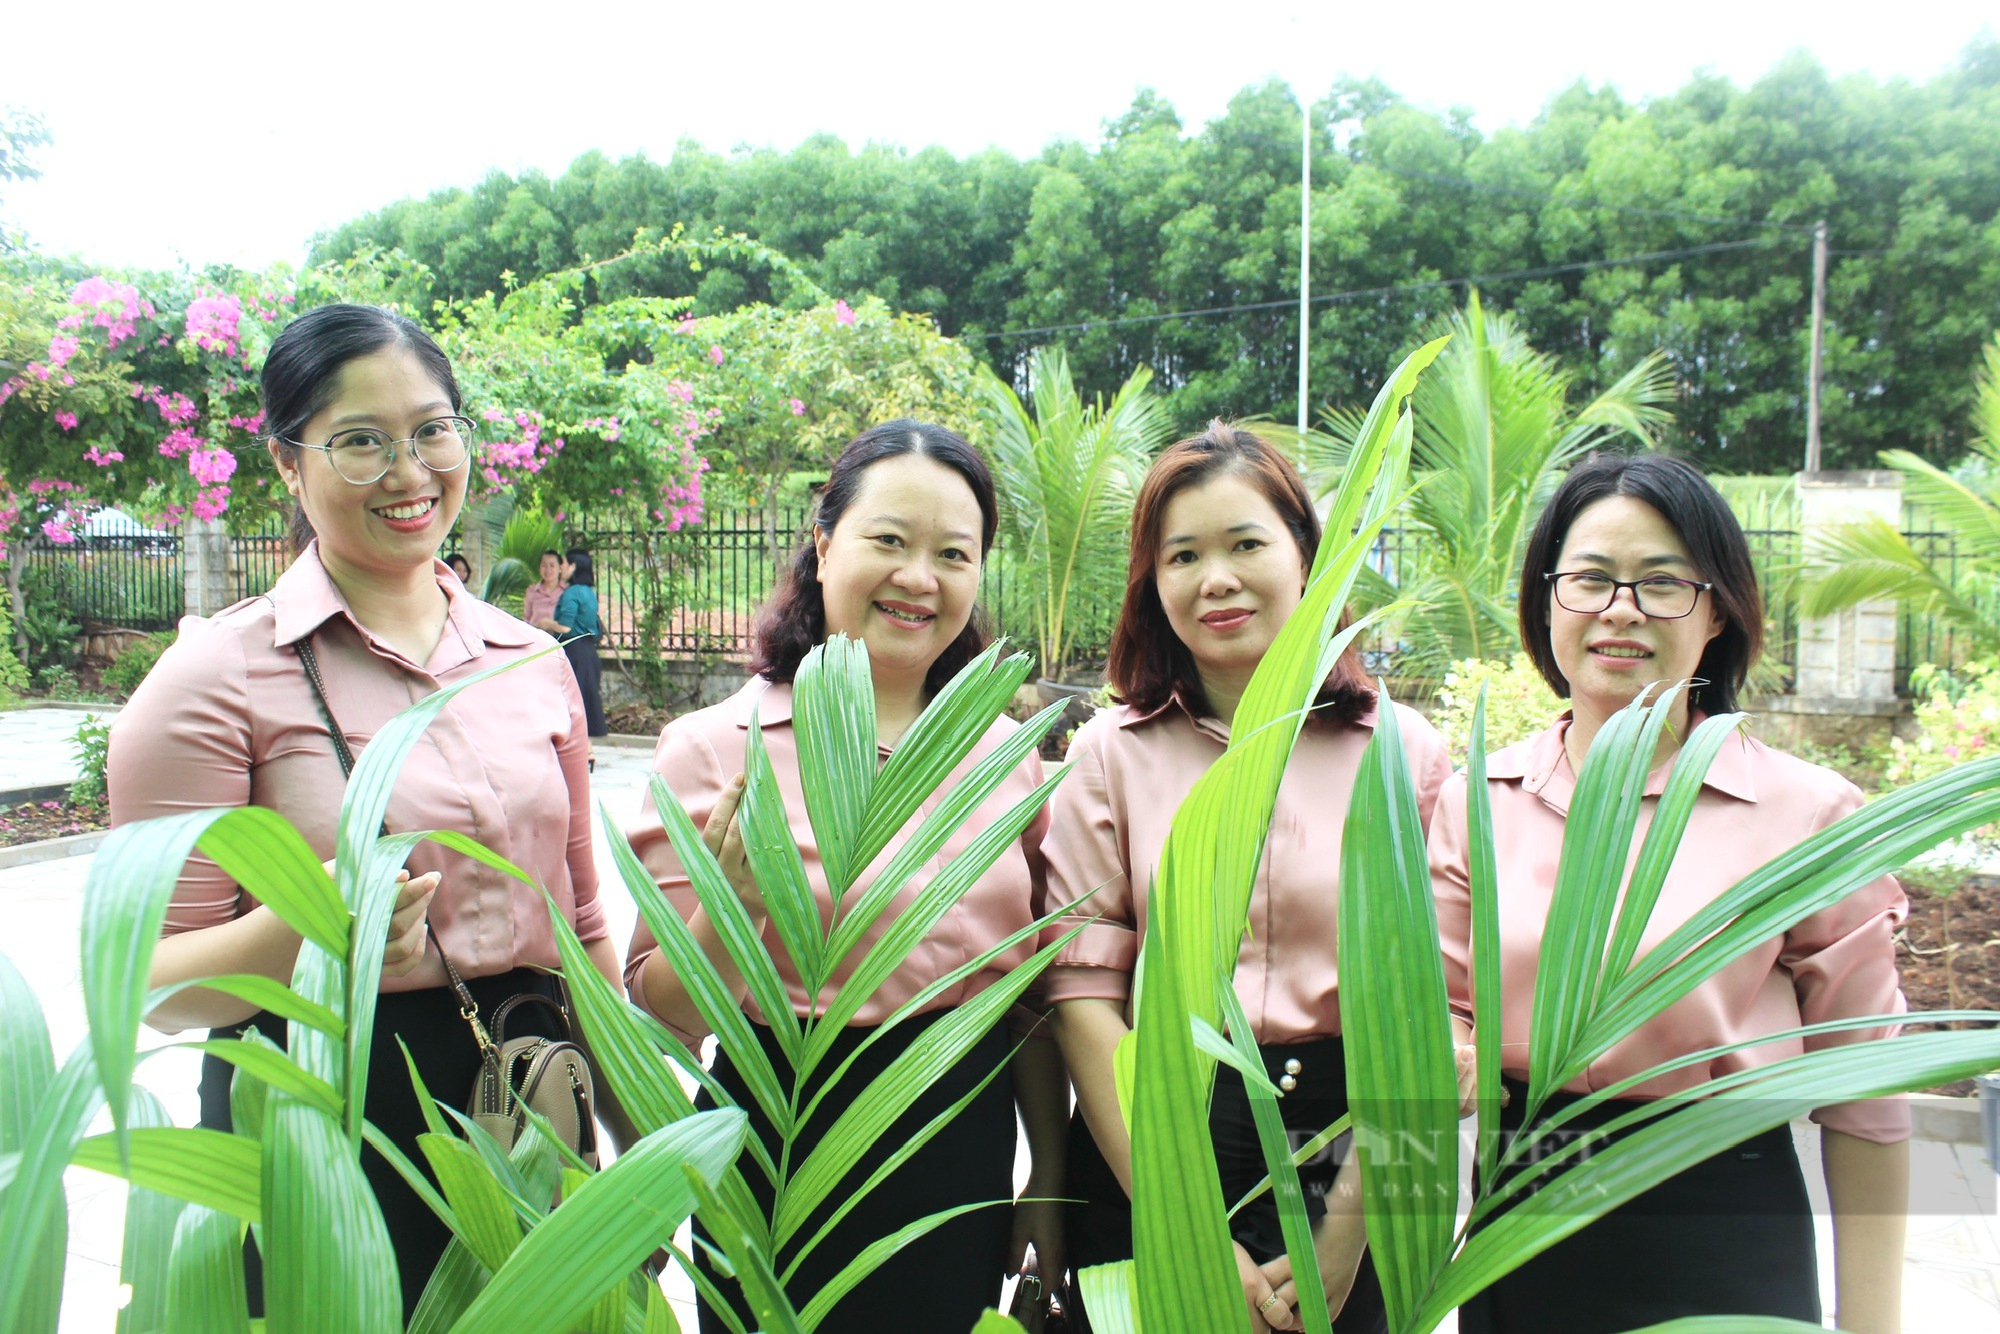 Hội Nông dân Quảng Bình khai trương Điểm cung ứng cây trồng chất lượng, năng suất cho nông dân - Ảnh 2.